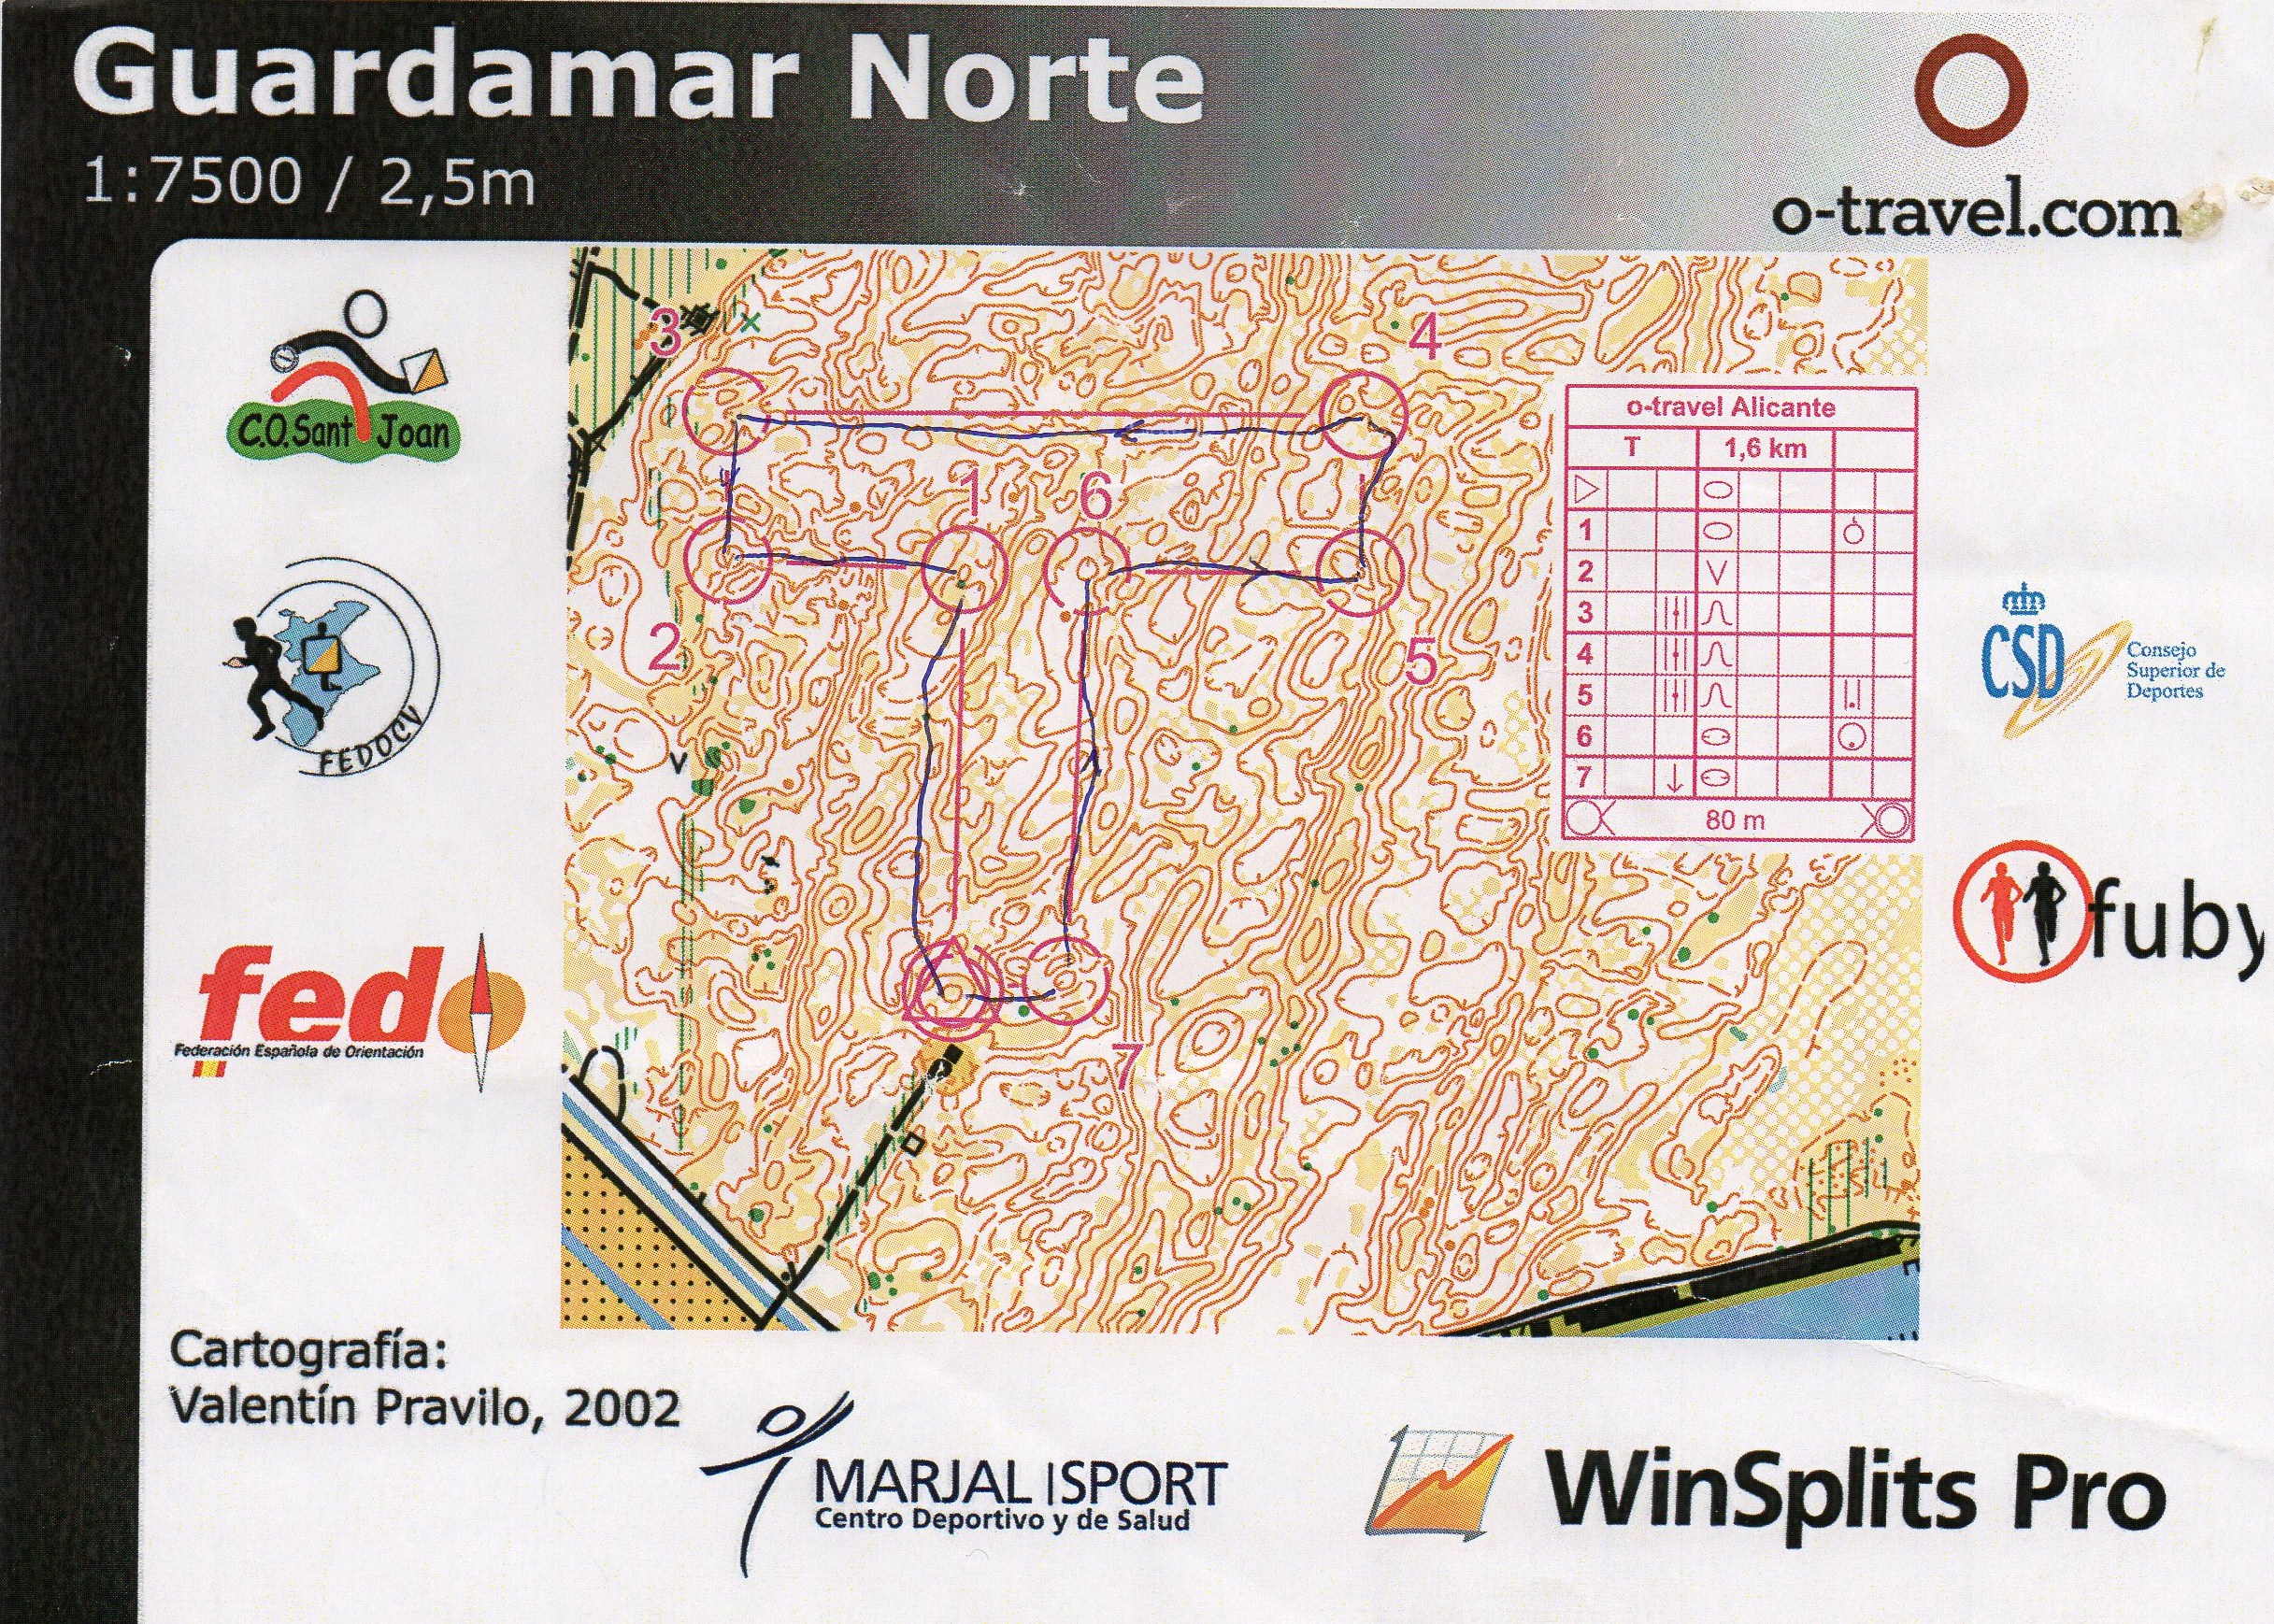 Spanienläger Guardamar första träningen T (09-02-2013)